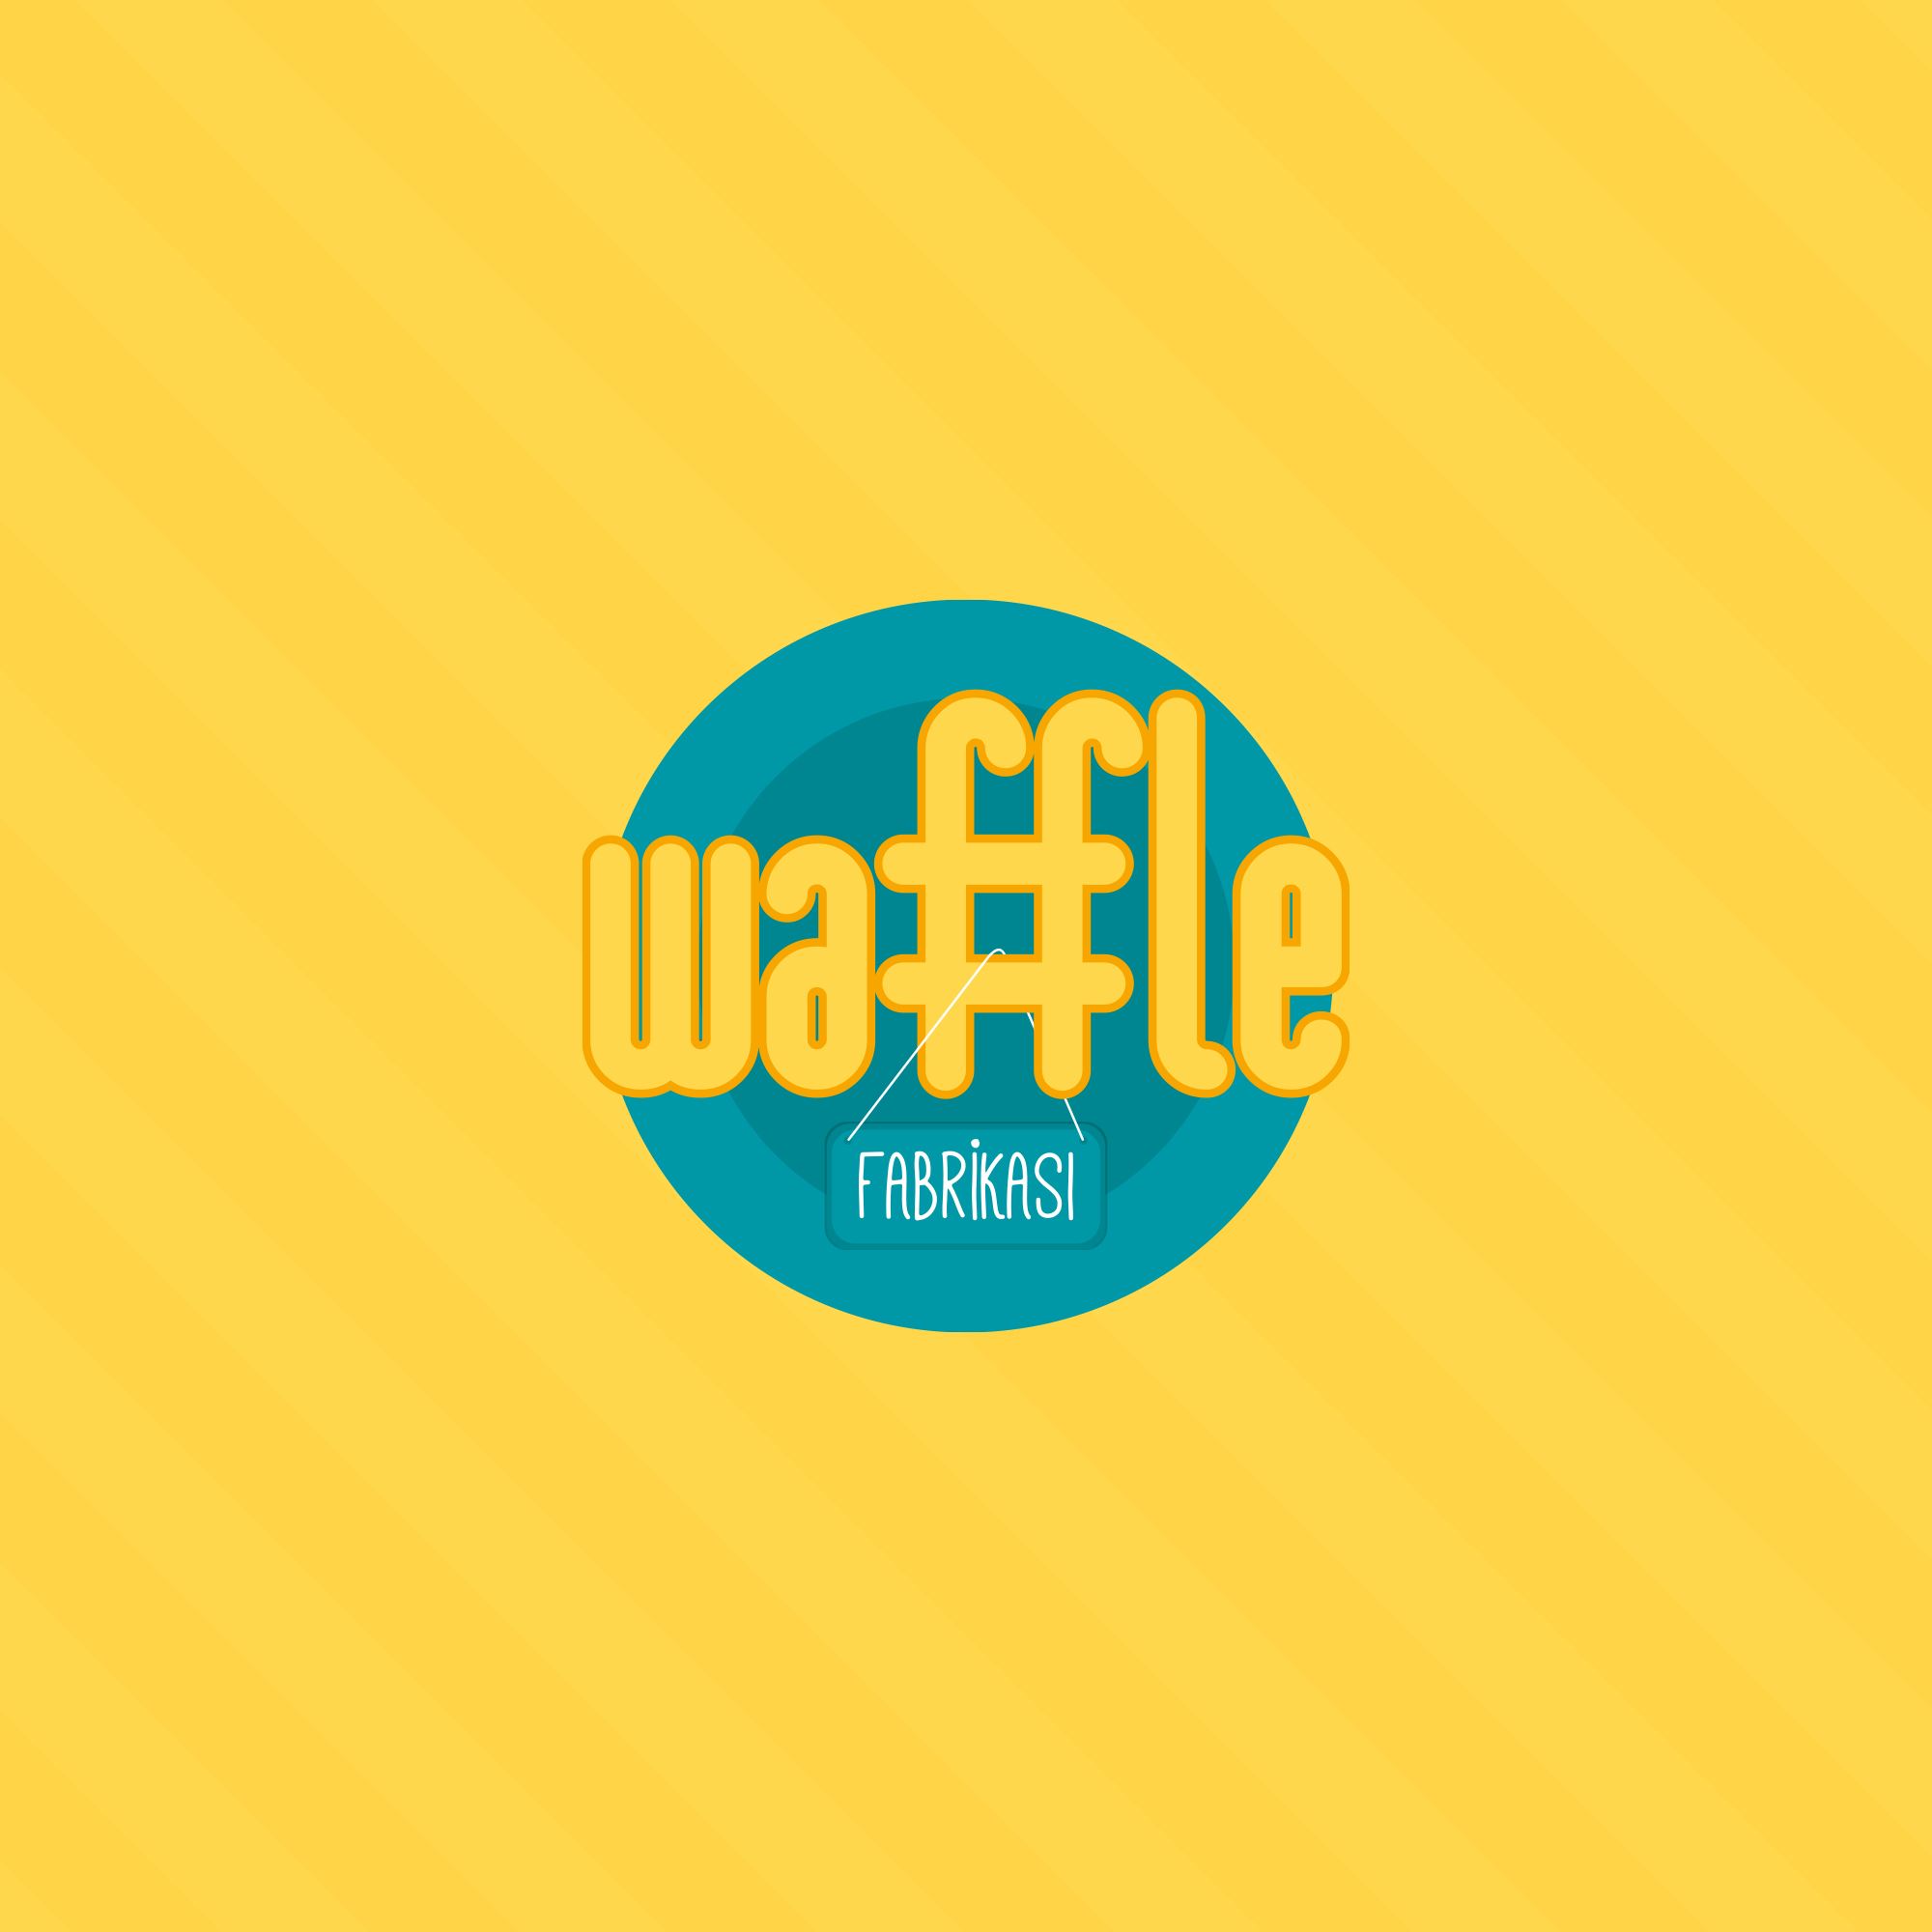 Waffle Fabrikası Marka Kimliği Oluşturma